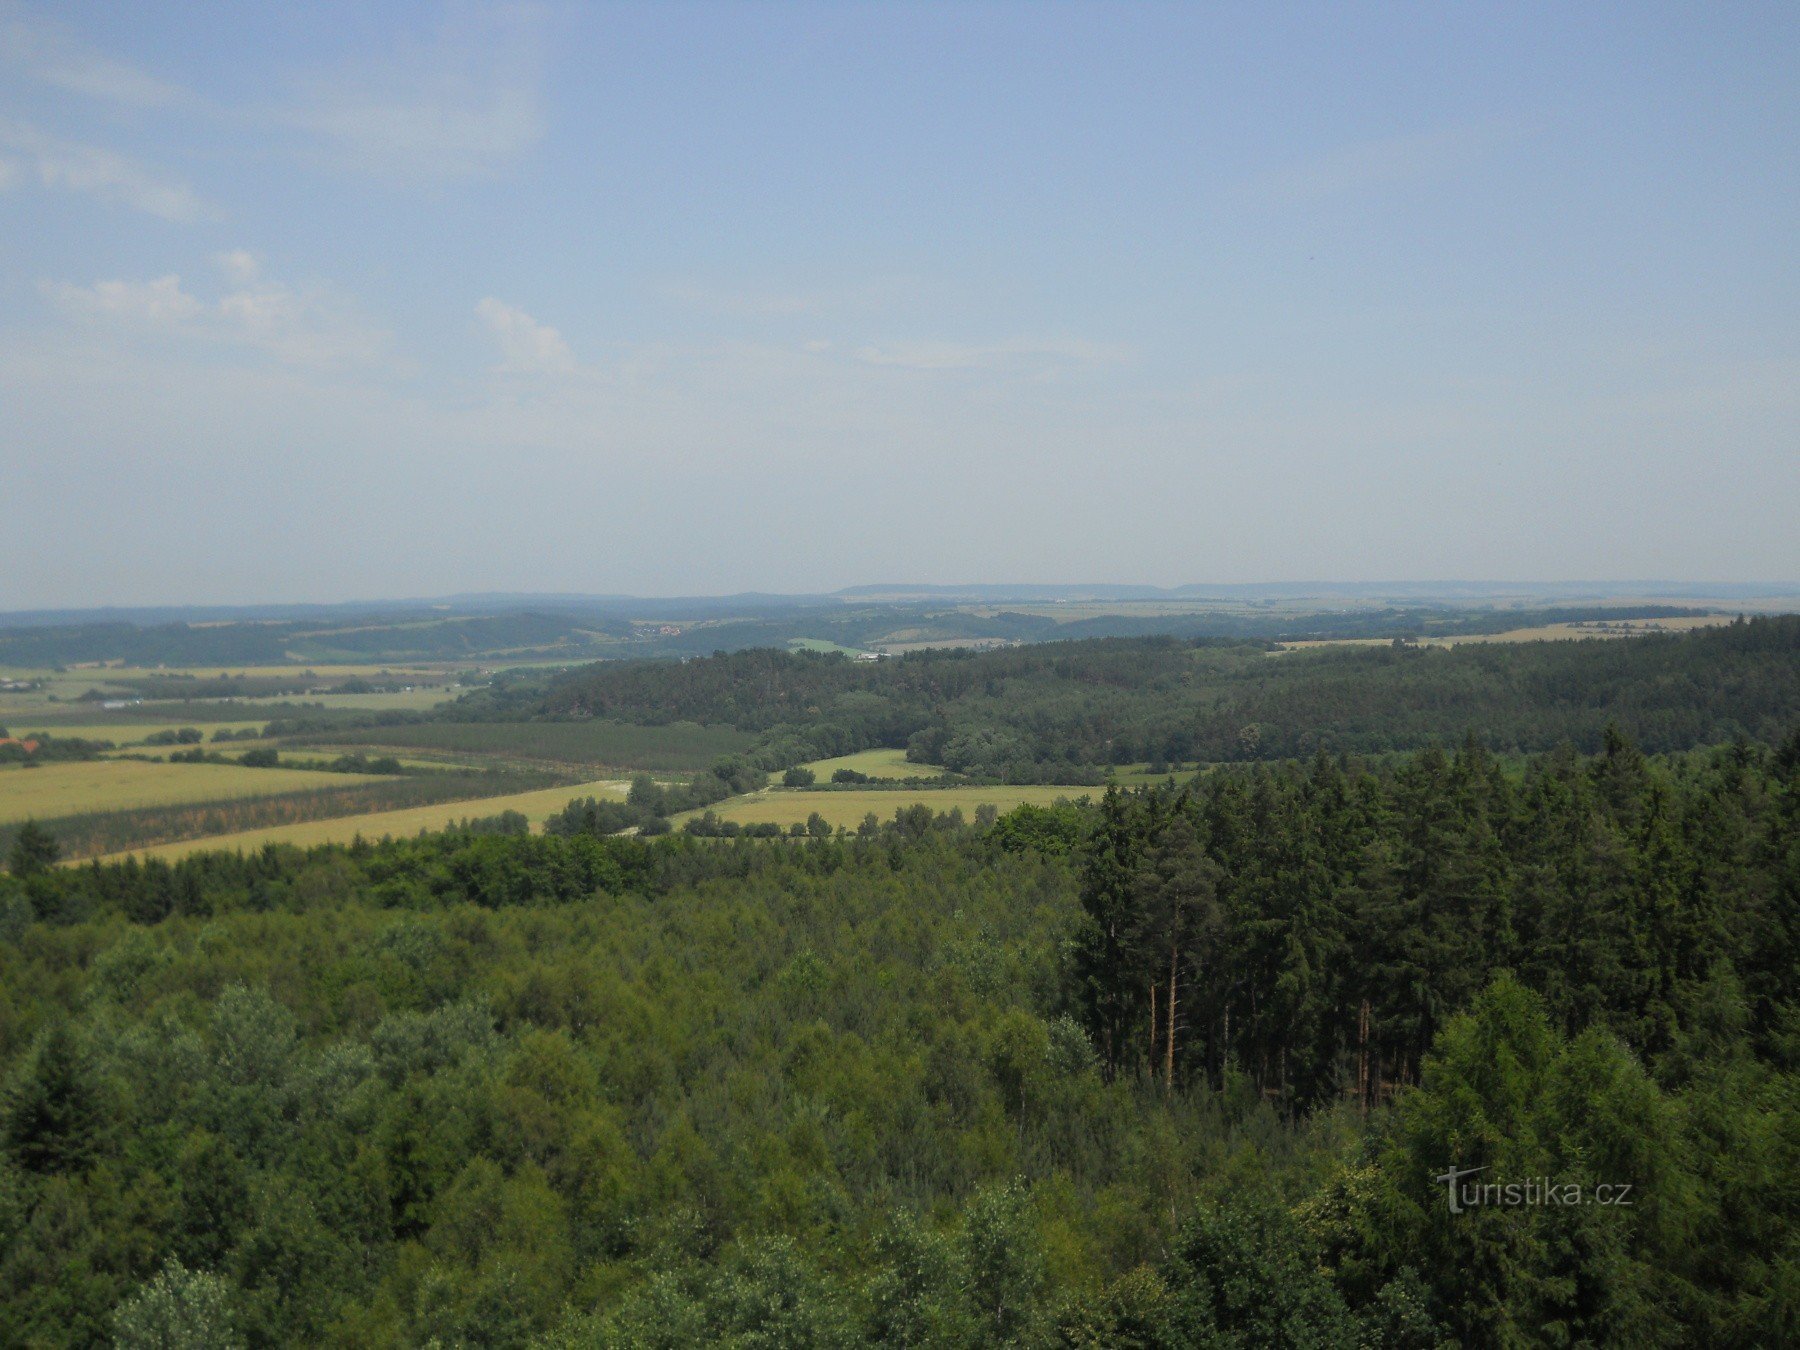 Wieża widokowa Tobiášův vrch